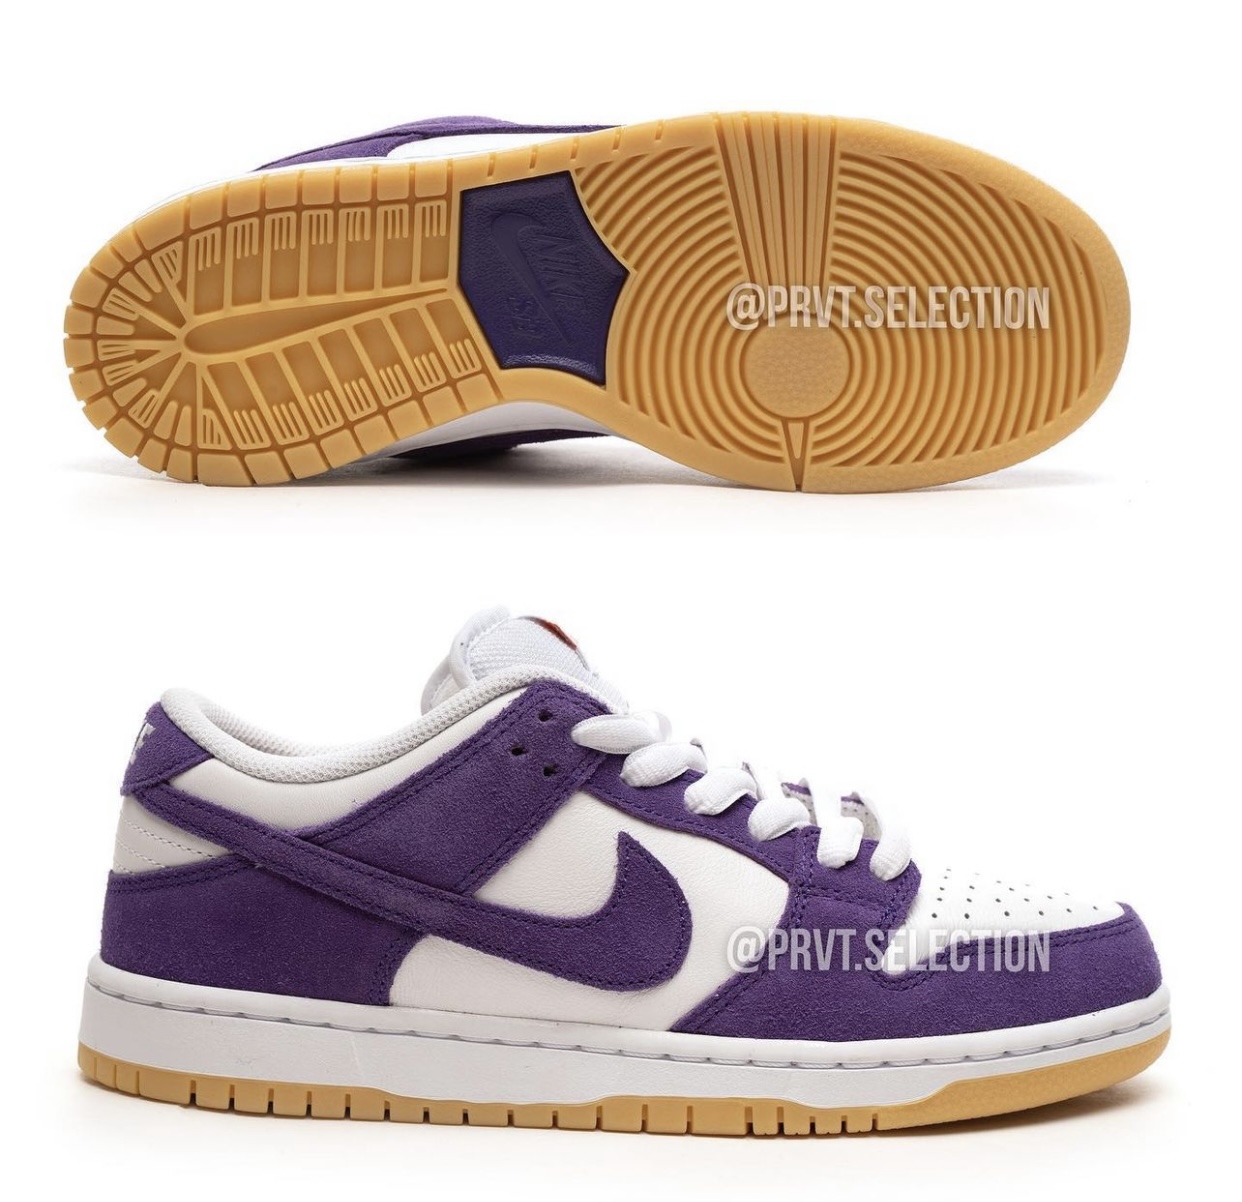 Nike SB Dunk Low Purple Suede DV5464-500 Release Date